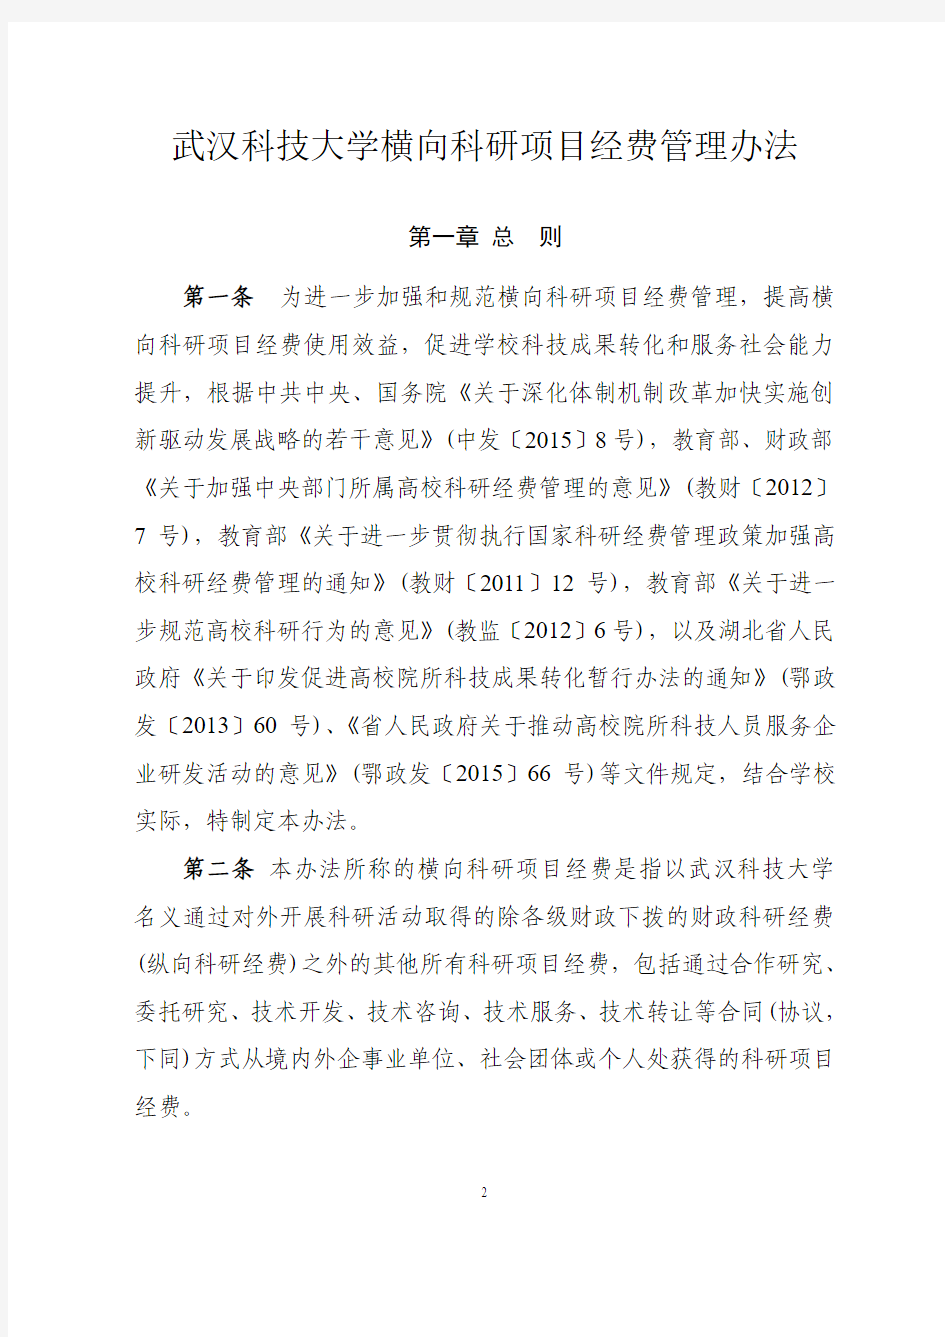 武汉科技大学 横向科研项目经费管理办法